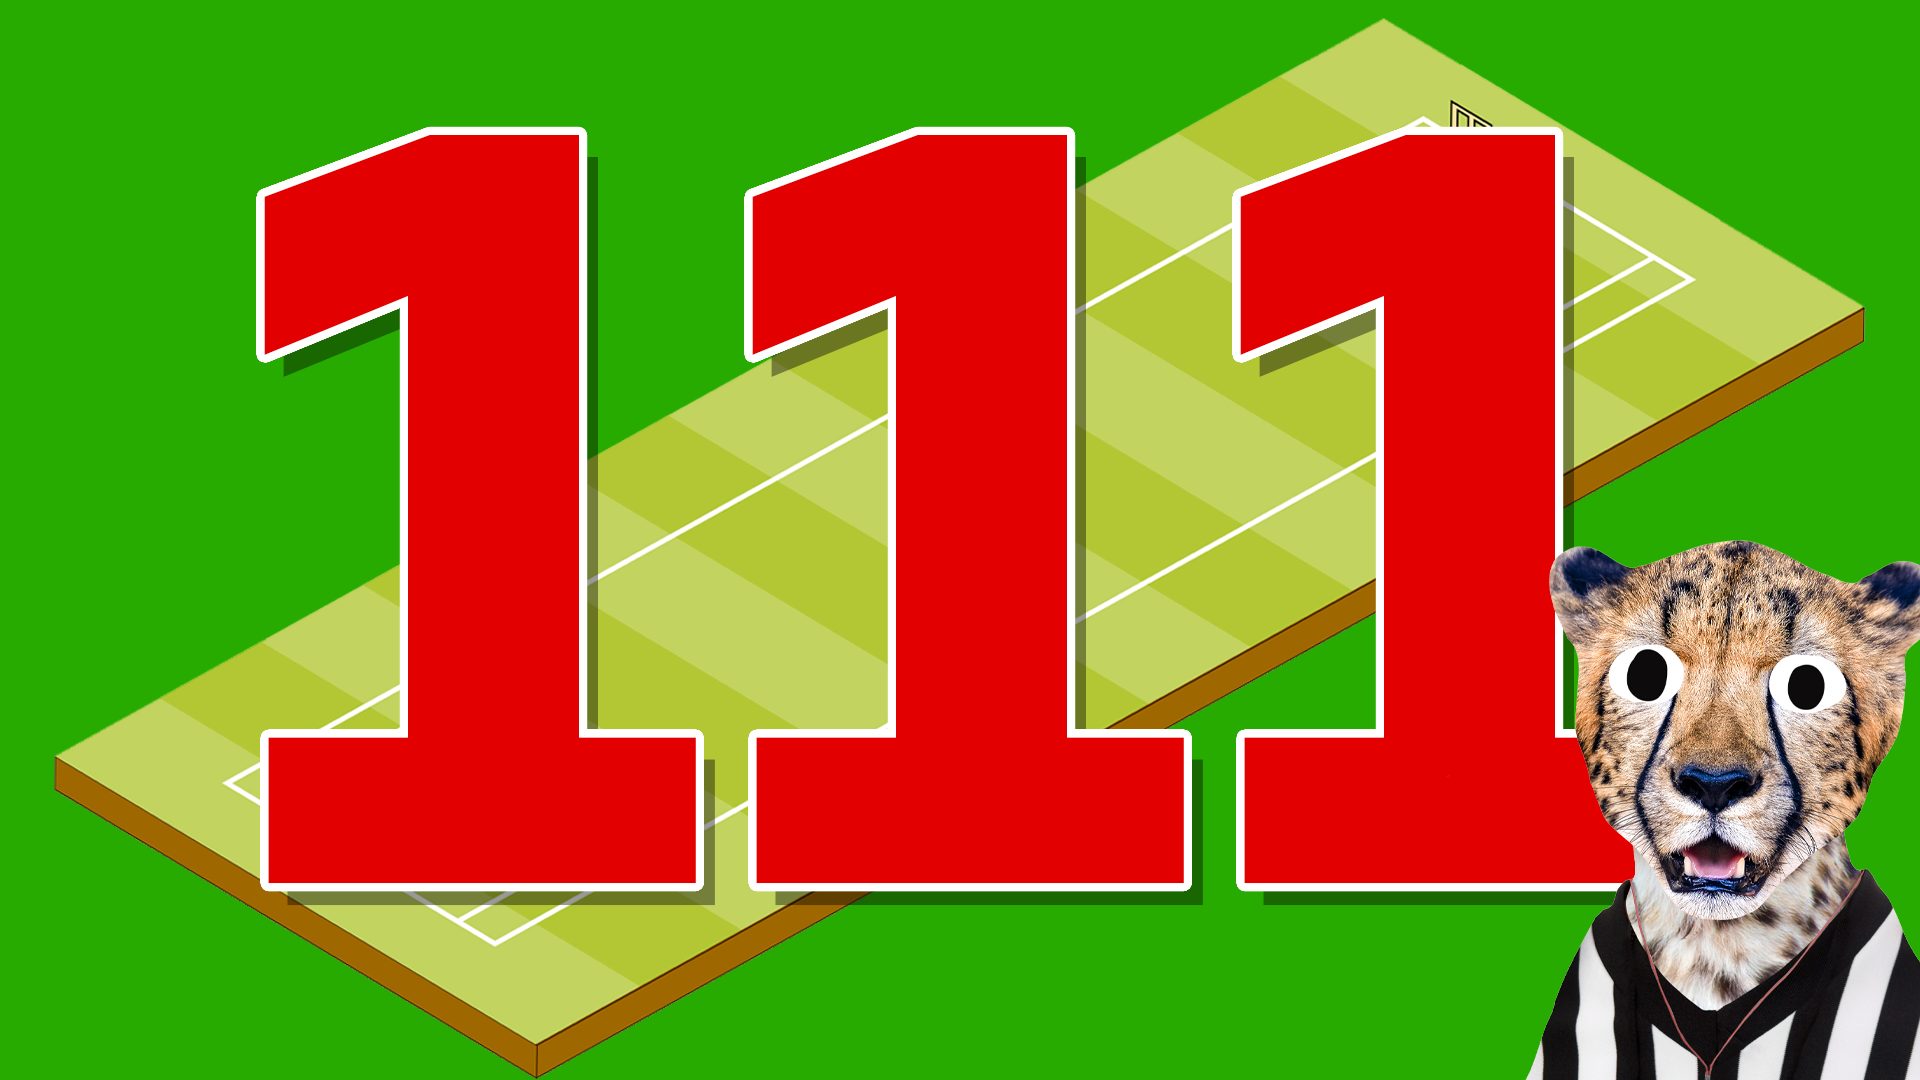 111 cricket runs